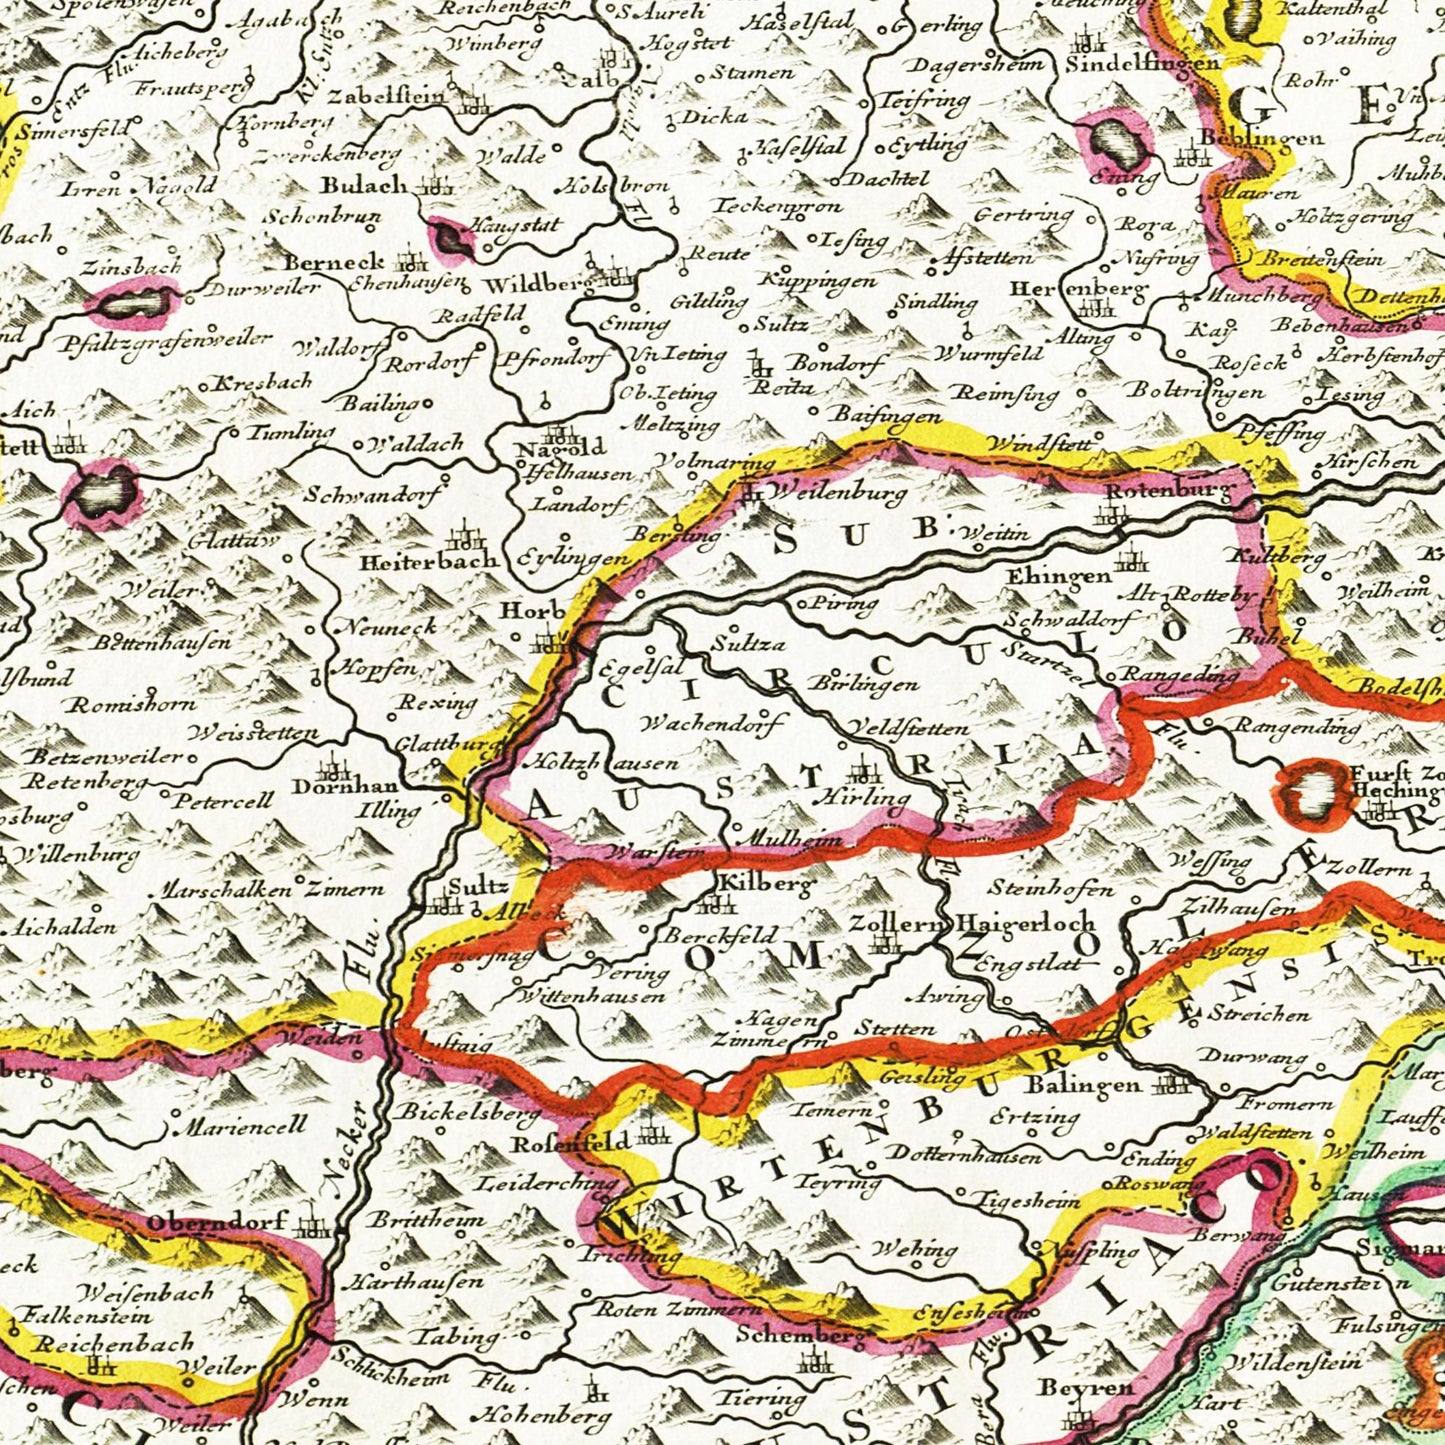 Historische Landkarte Württemberg um 1680